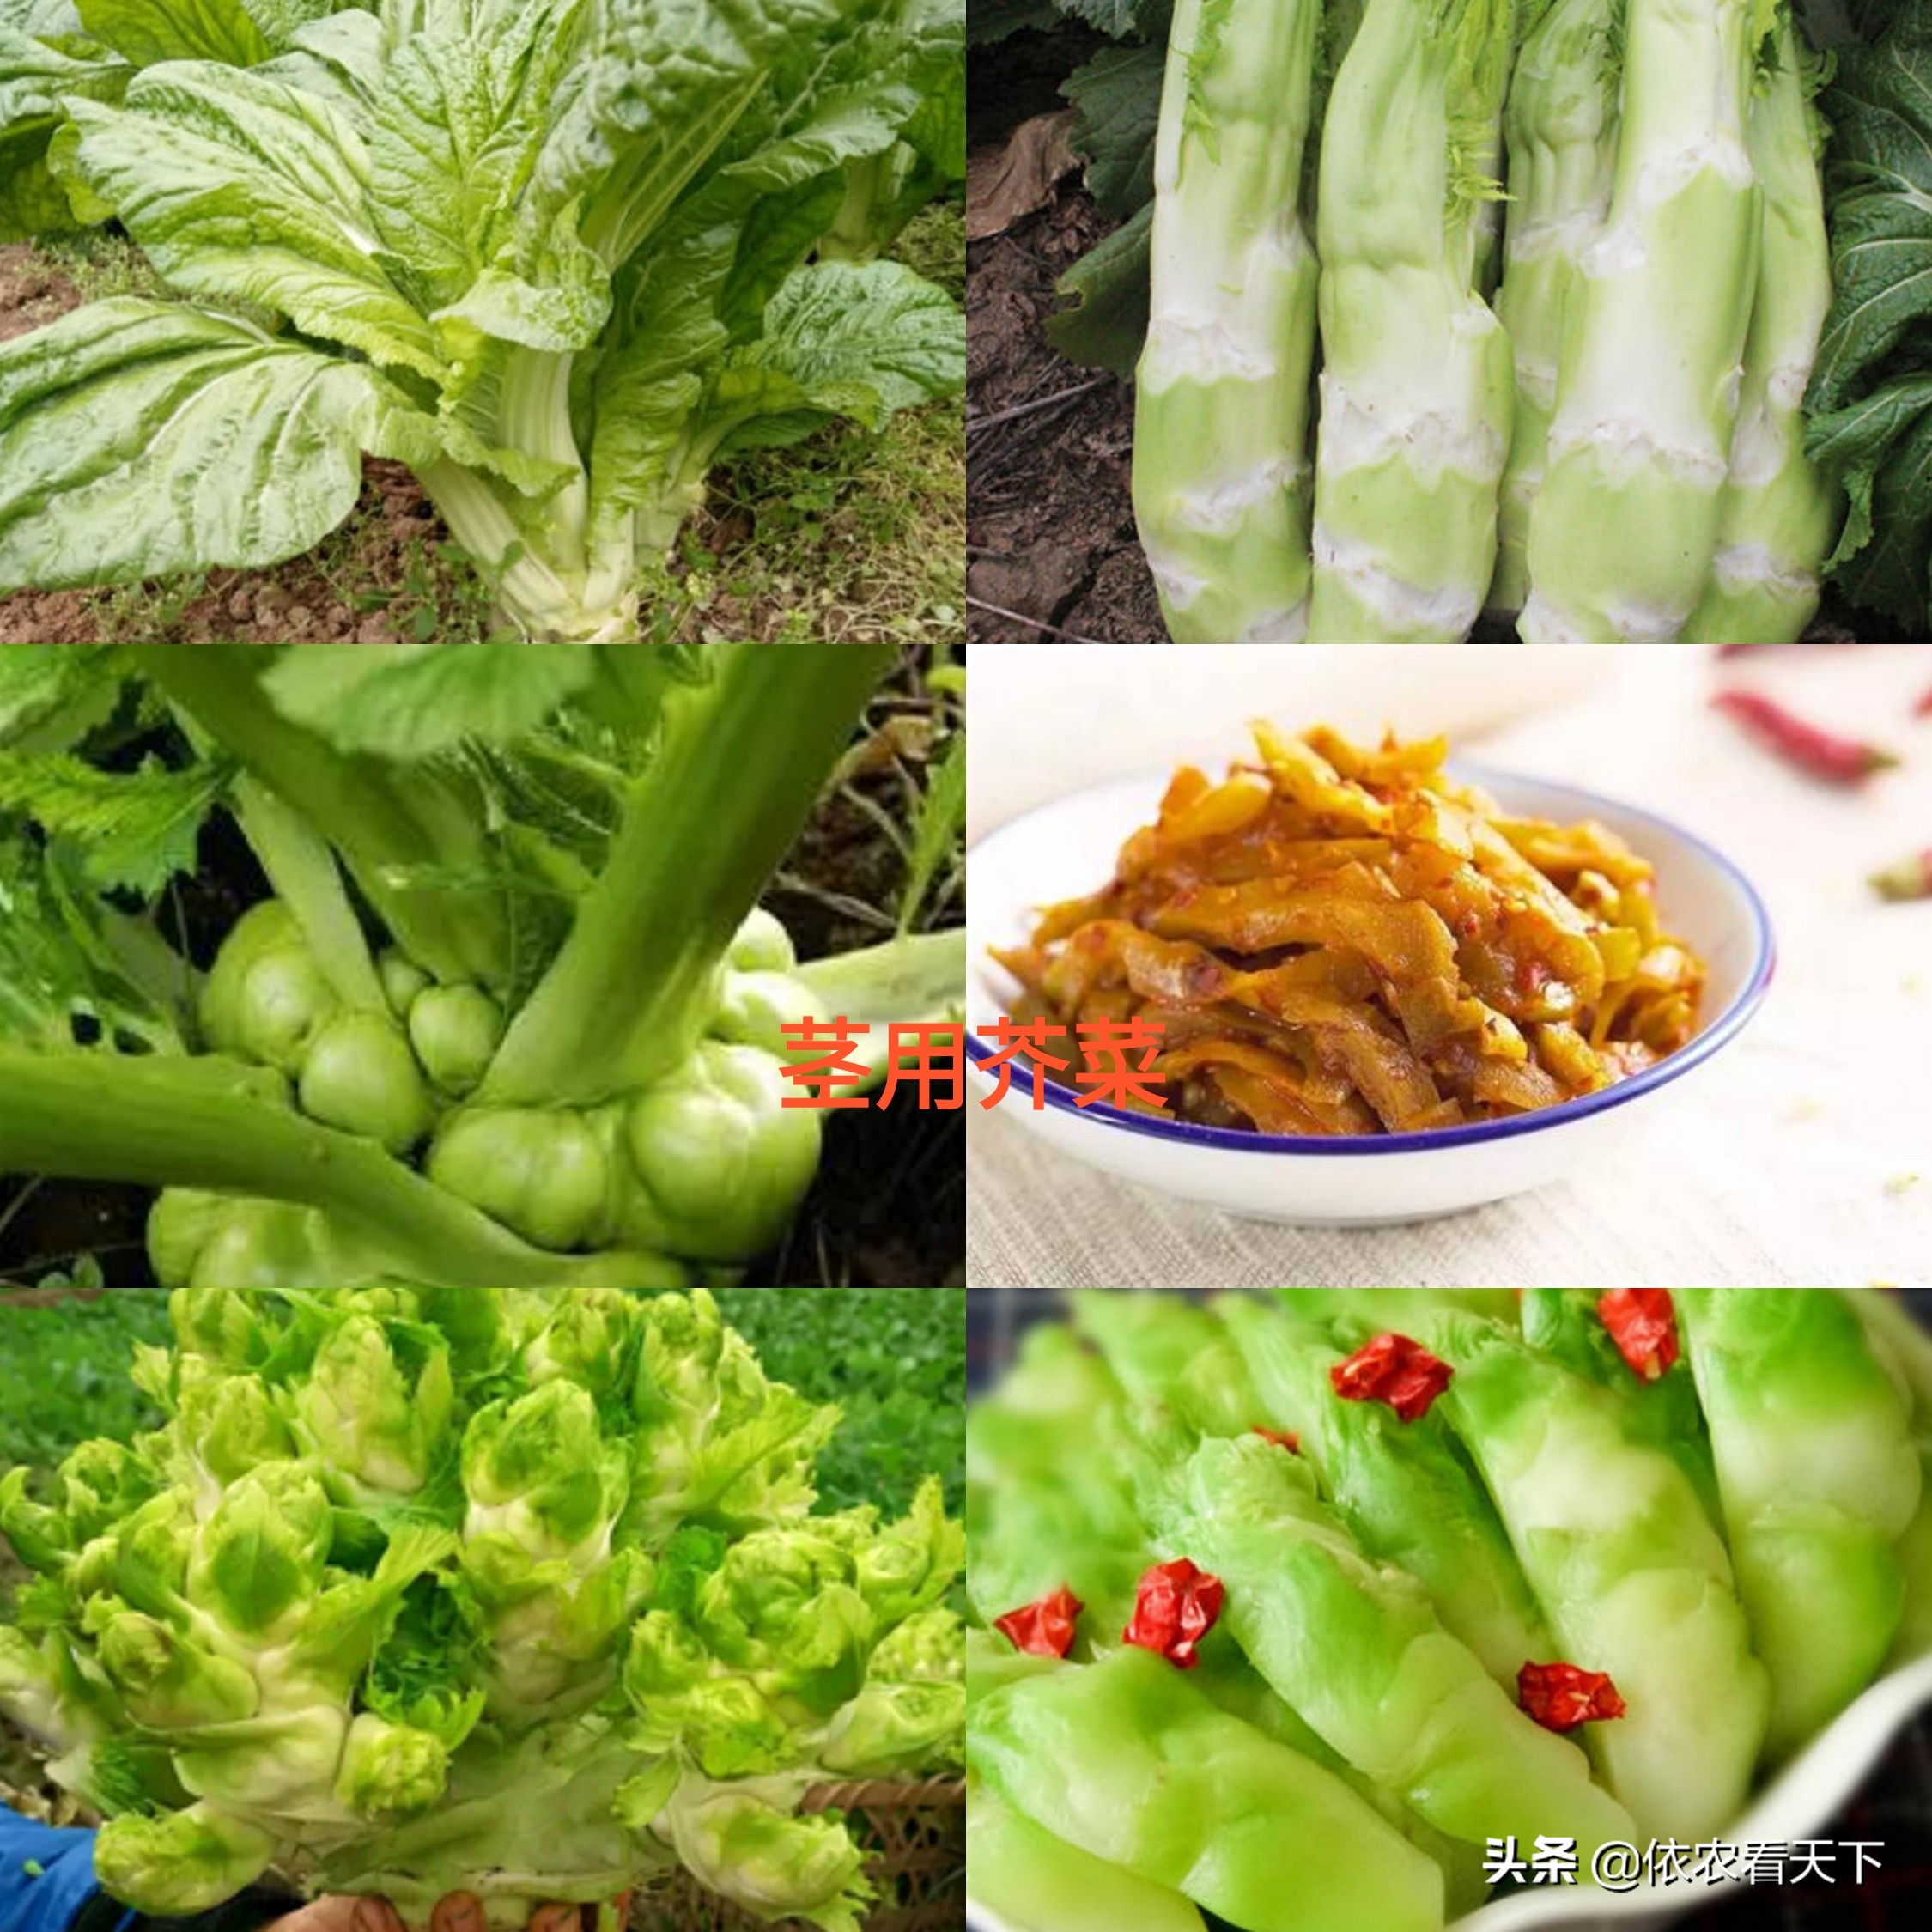 叶用芥菜在我国南北地区均有种植,主要分布在南方,它是芥菜类蔬菜中的